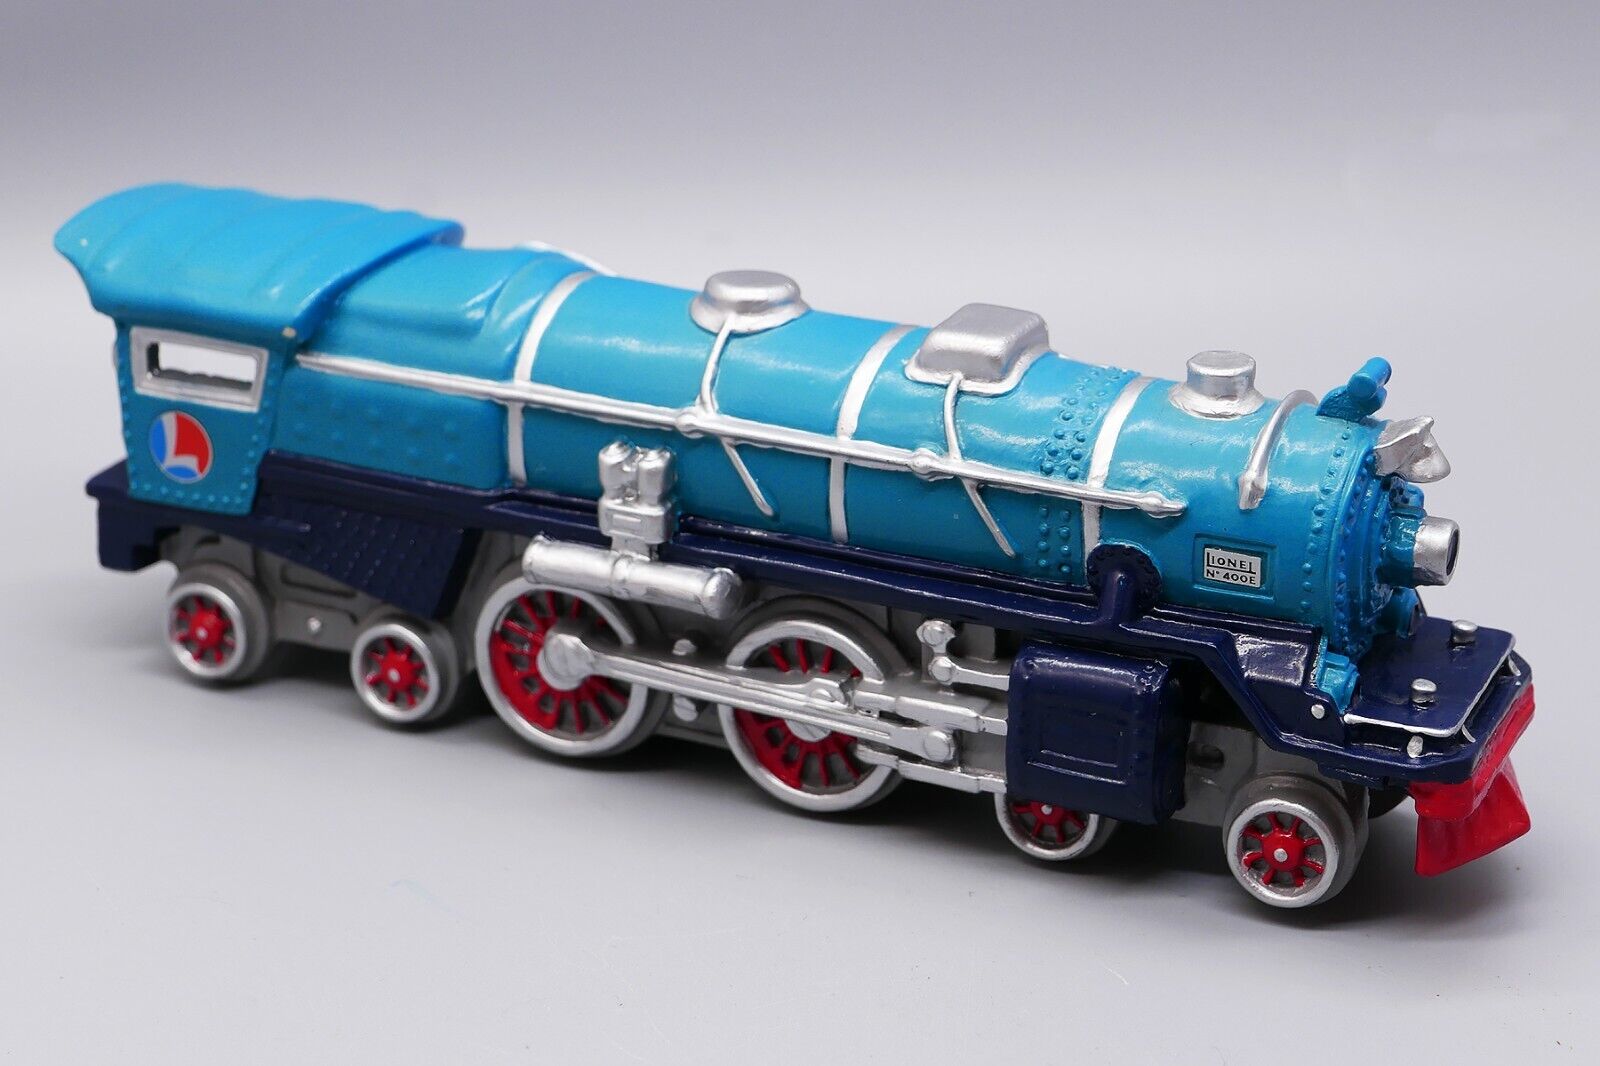 Avon No. 400E 1931 Blue Comet Train Locomotive By Lionel - No Wood Base